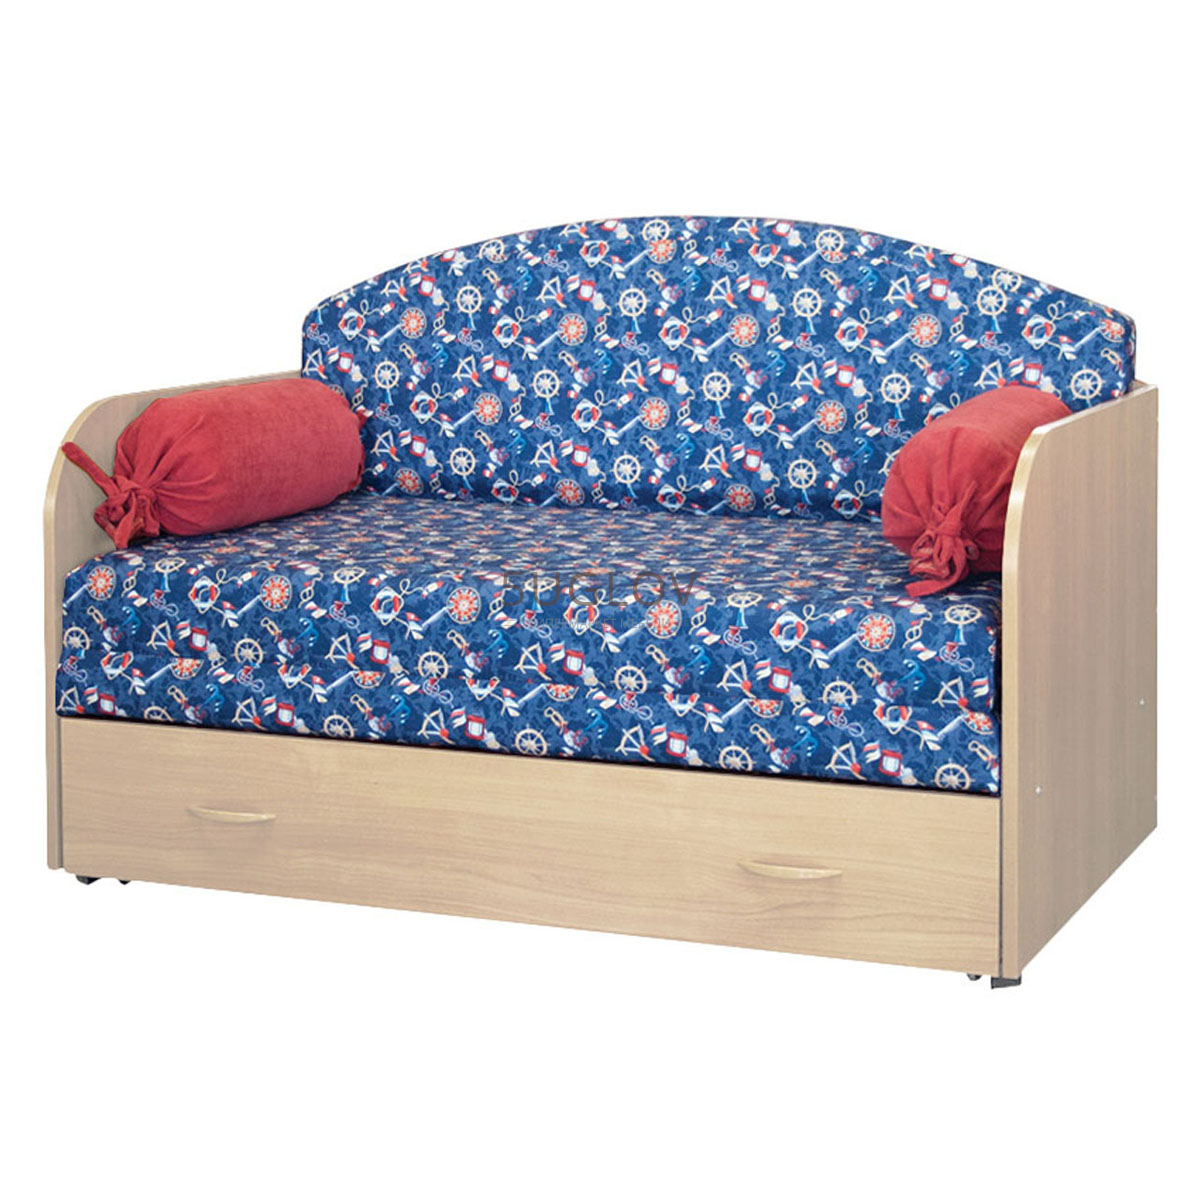 Диван-кровать Антошка 1 - купить по лучшей цене 14555.00 руб. от фабрики Нижегородская мебель и К в Москве!